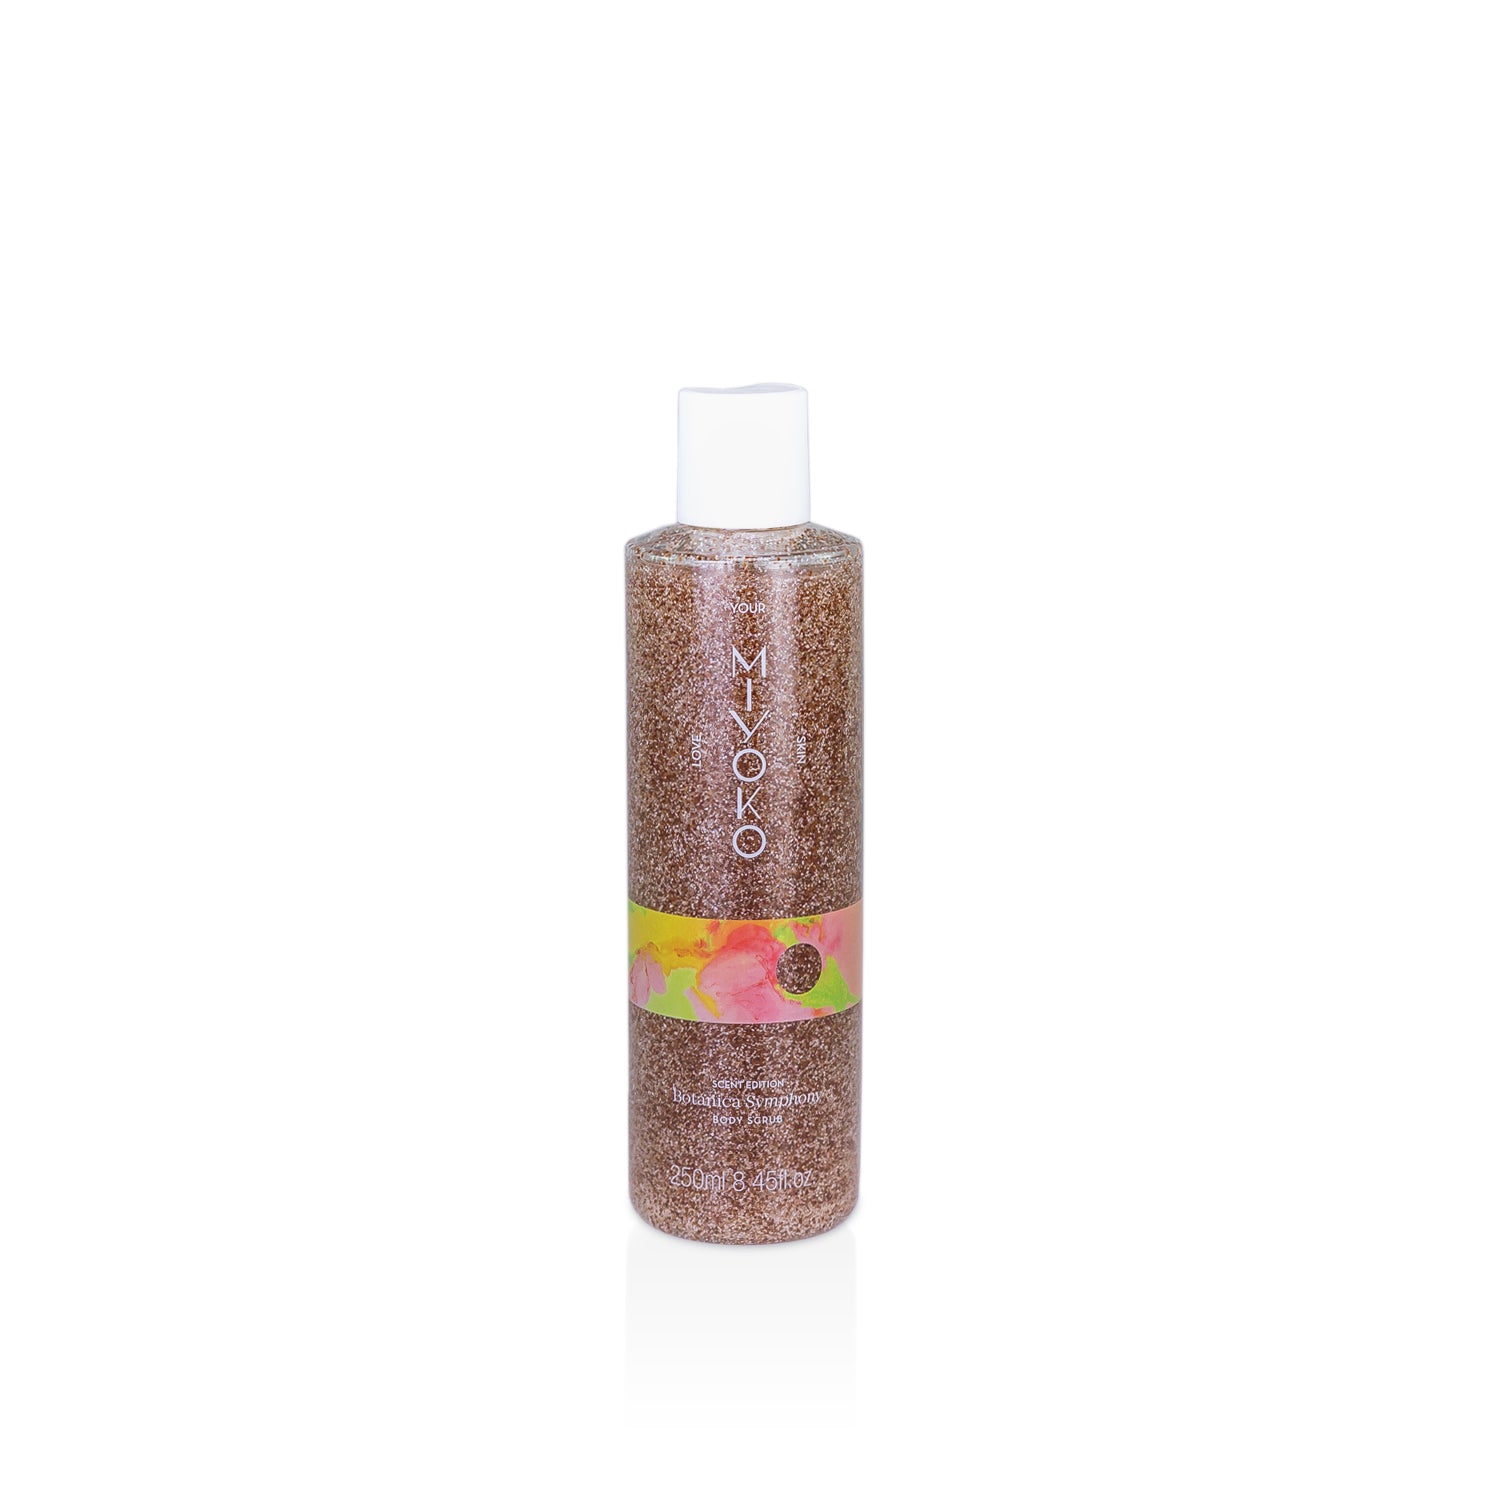 Gel de banho esfoliante de 250ml com caroço de alperce e celulose, do aroma Botanica Symphony.